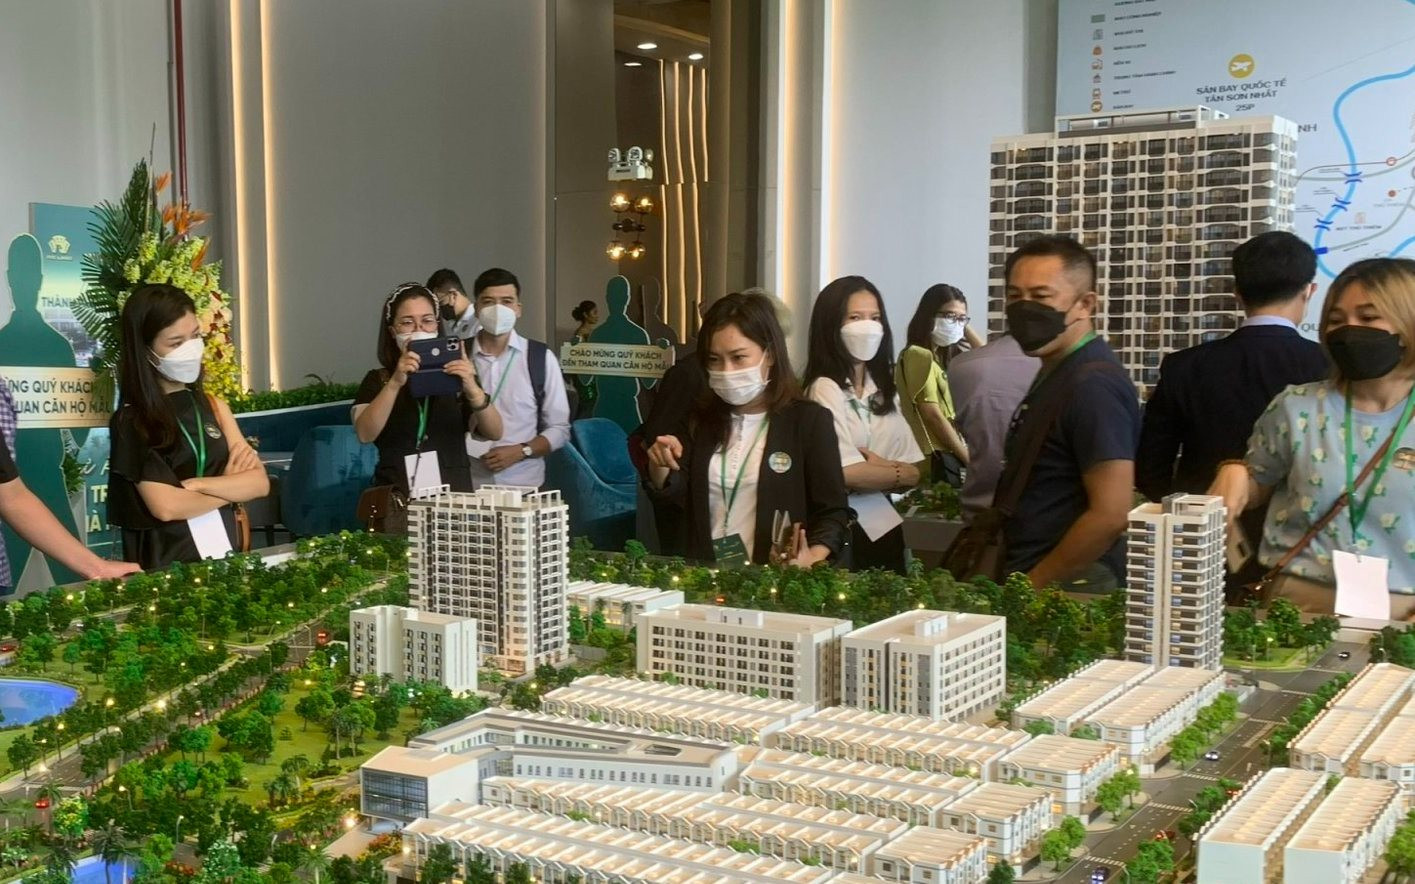 Giá bán chung cư Hà Nội tăng đến 16% trong 2 tháng đầu năm đẩy giá thuê căn hộ tiếp tục tăng cao